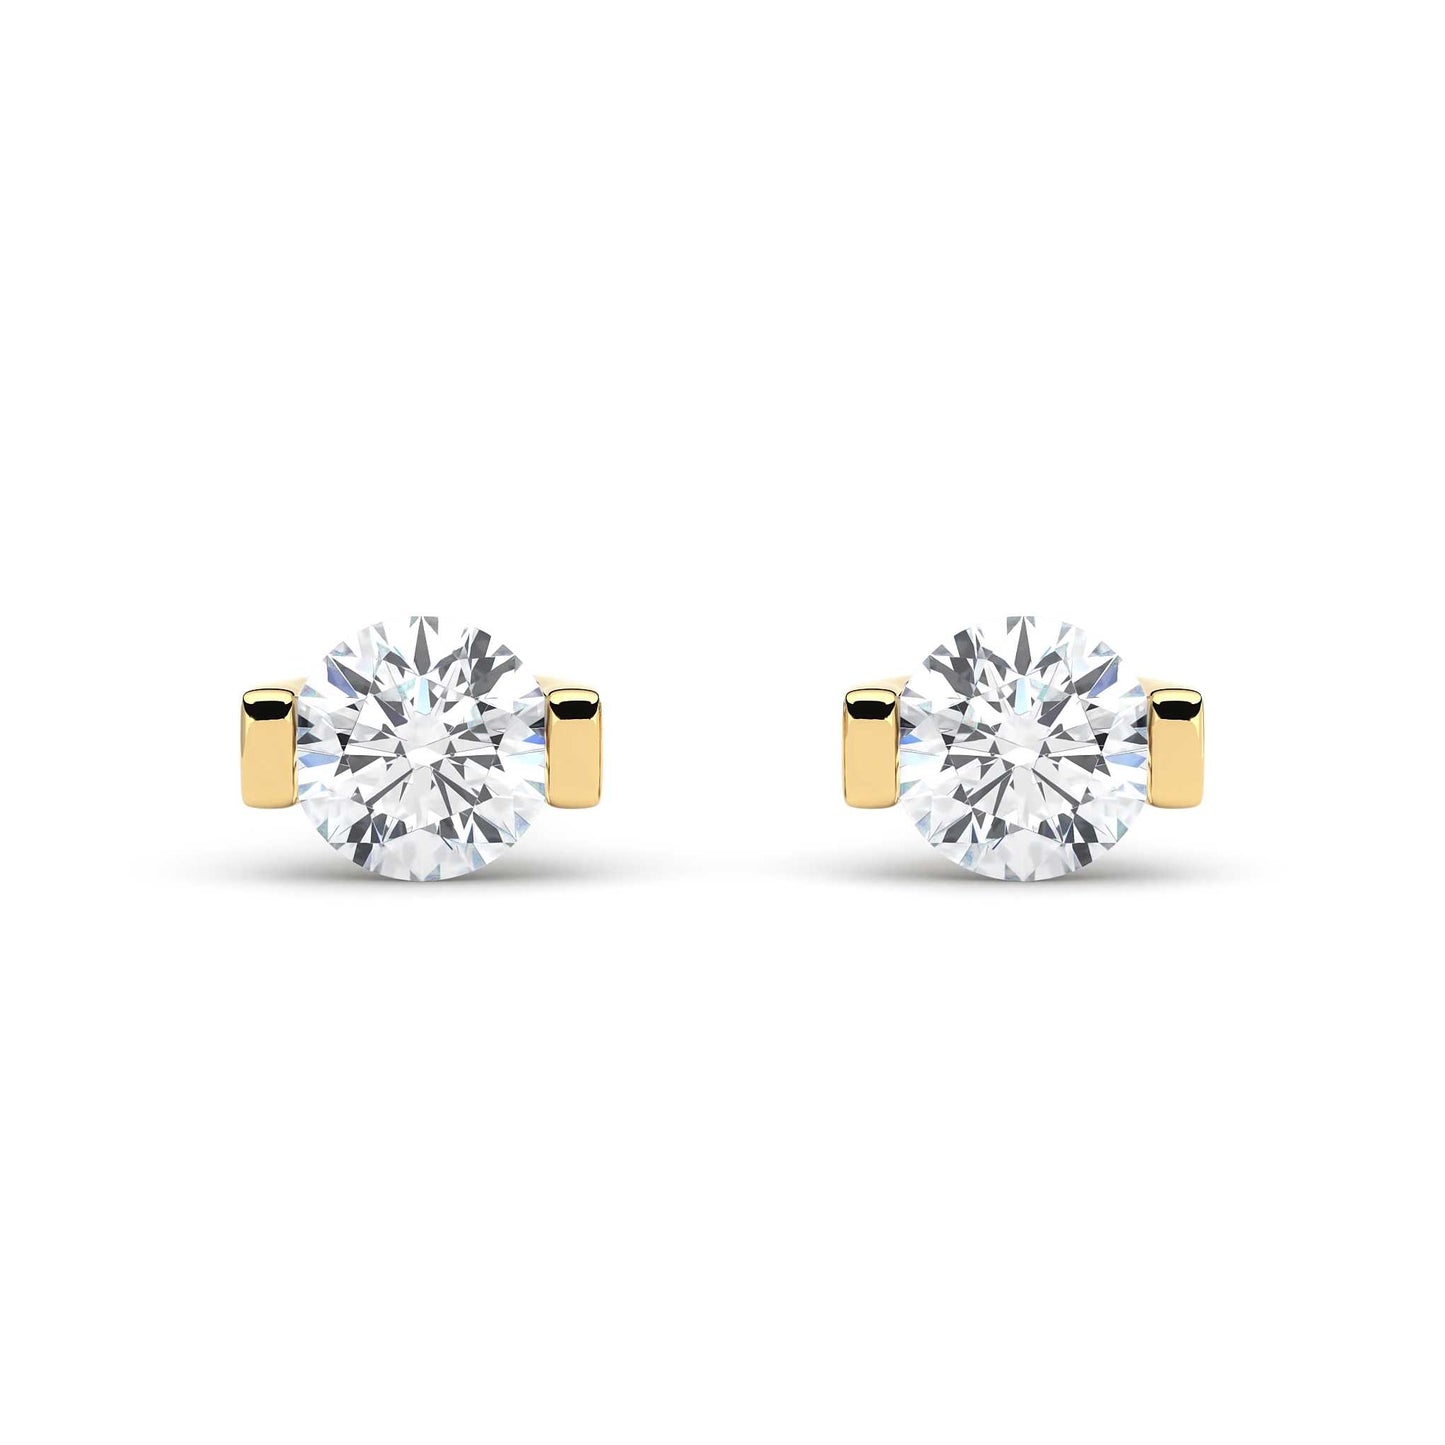 Suokko Timanttikorut -timanttikorvakorut keltakultaa, jossa istutettuna 2 timanttia. Tuotekoodi KE06521